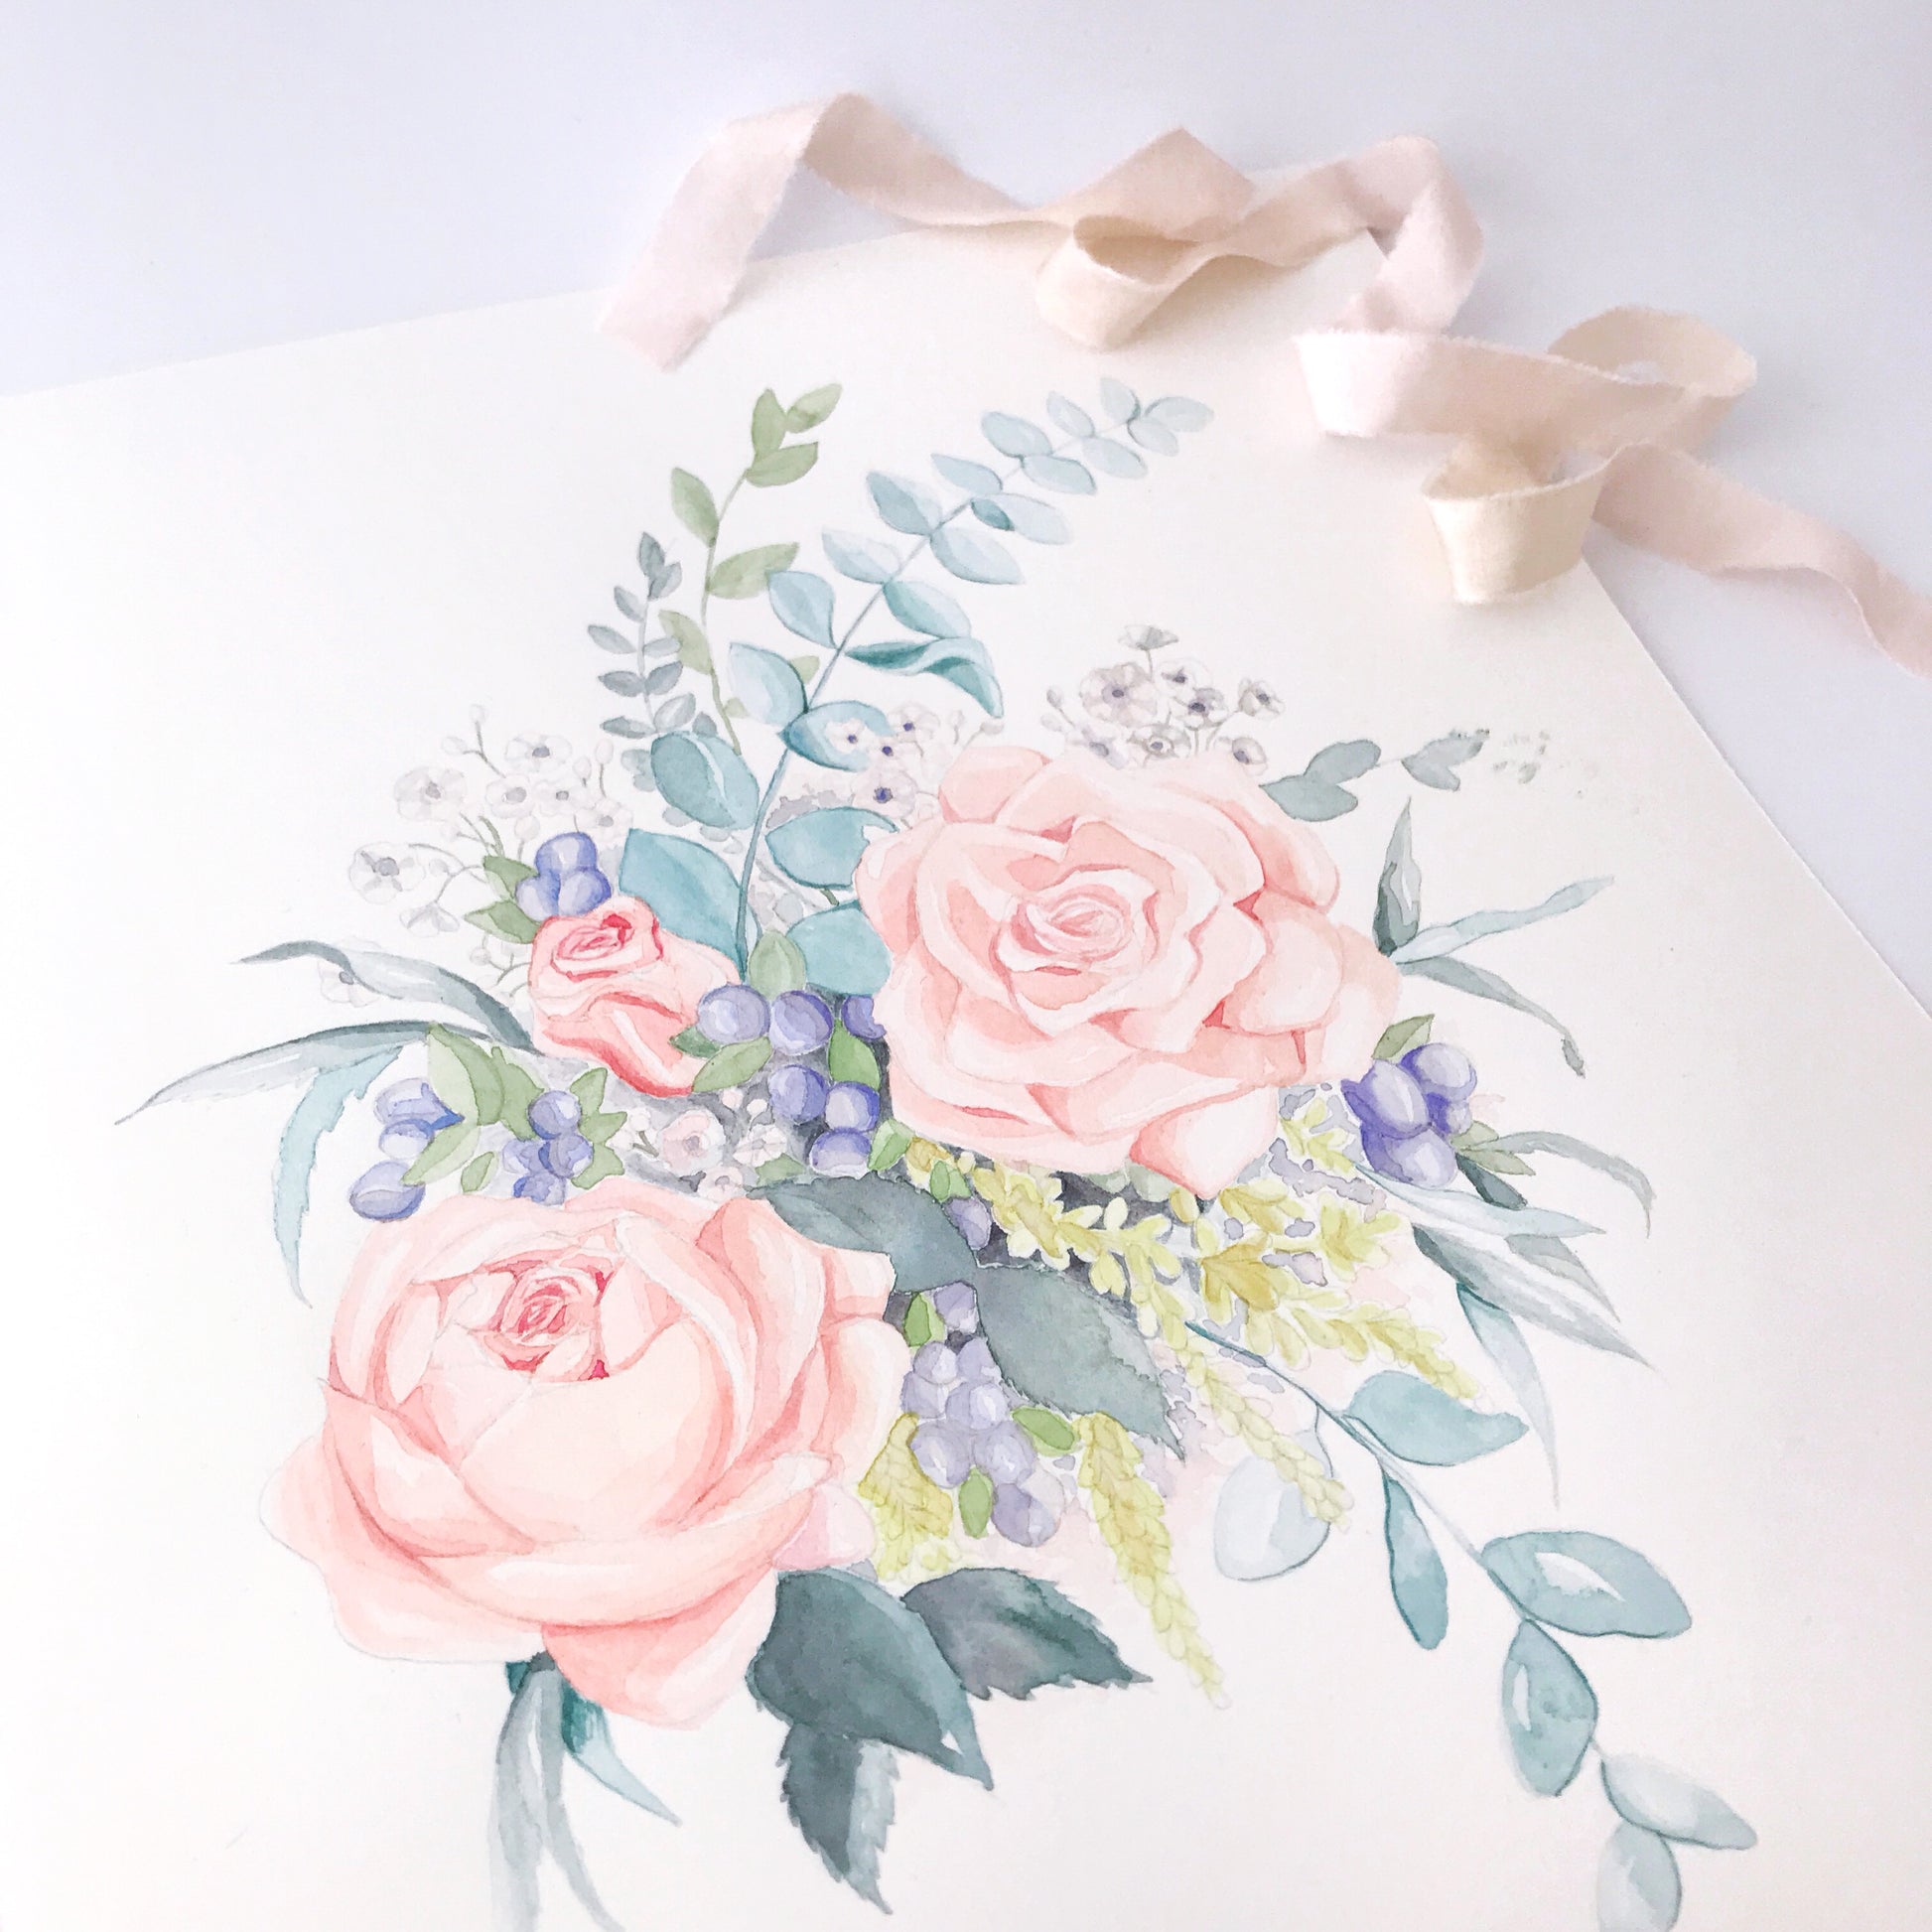 Reproduction imprimée d'une aquarelle représentant un bouquet de roses